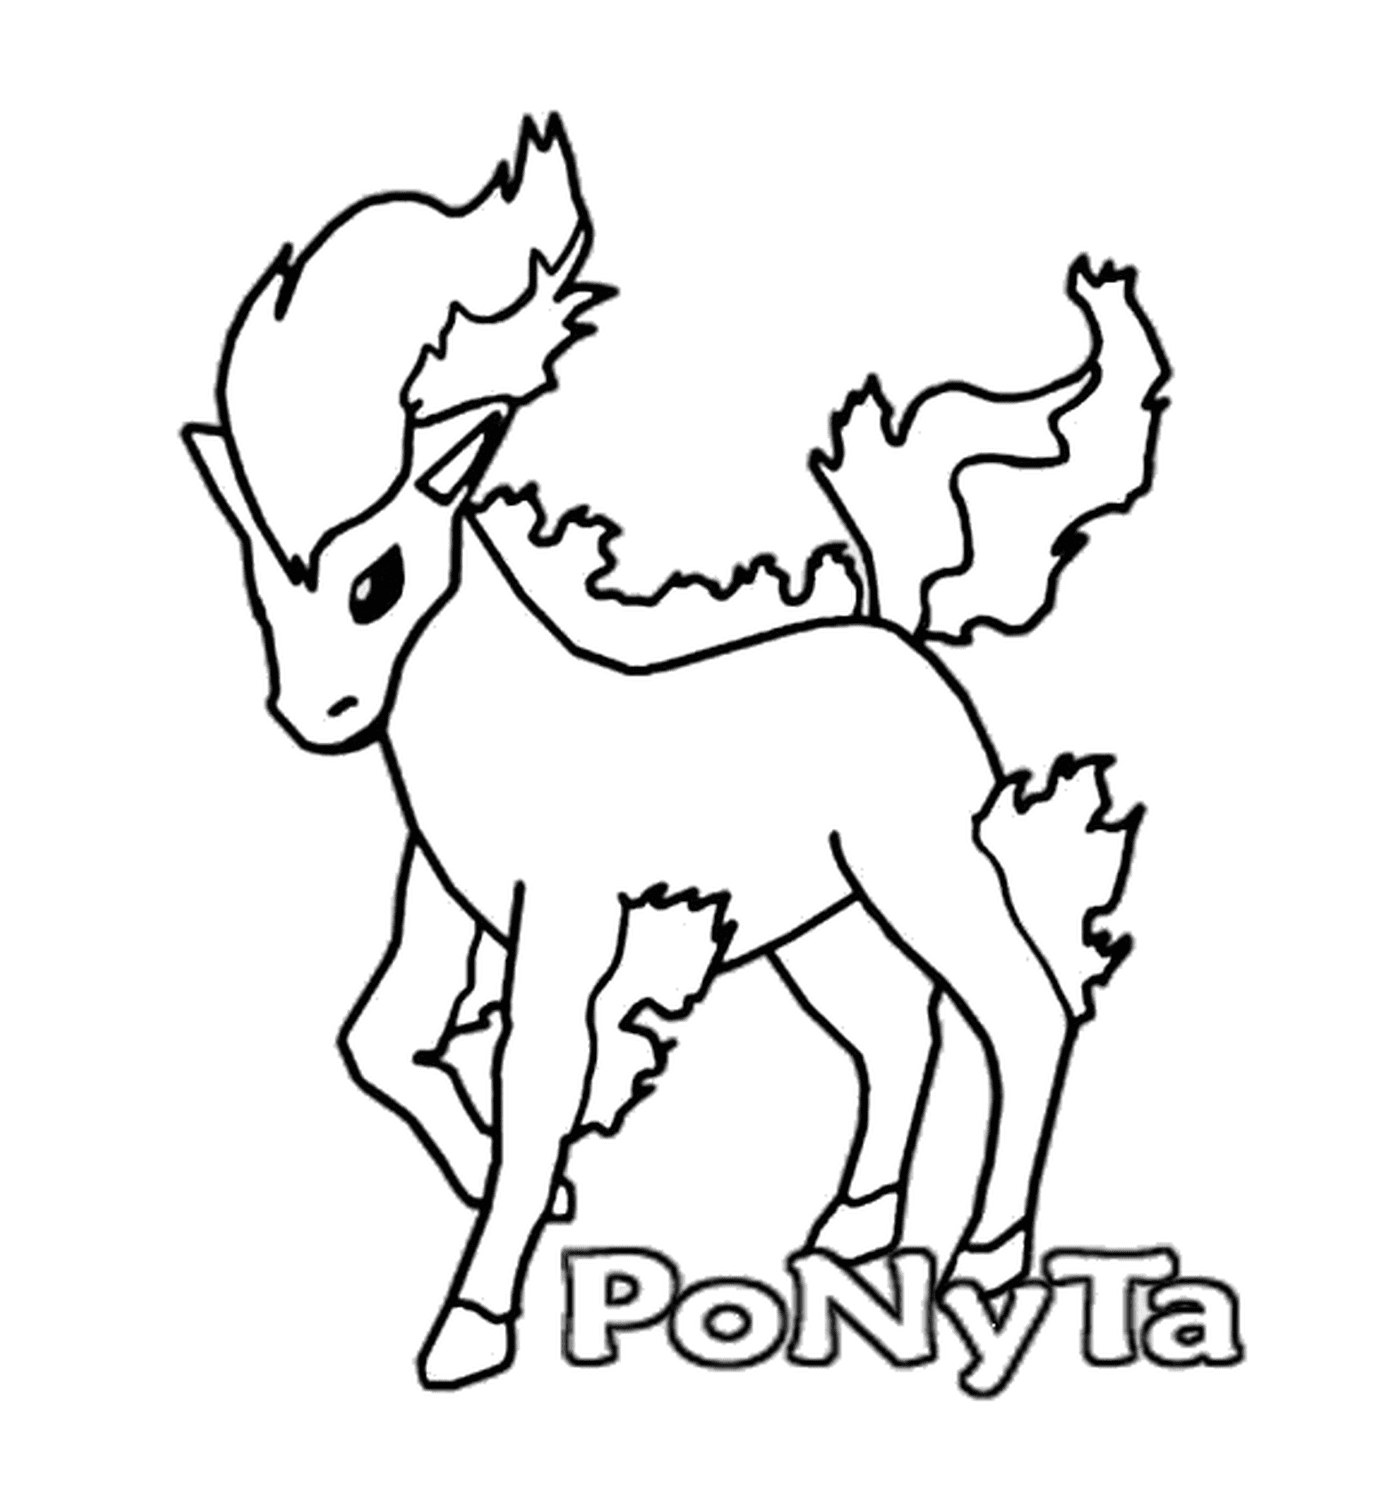  Ponyta : Caballo de fuego elegante 